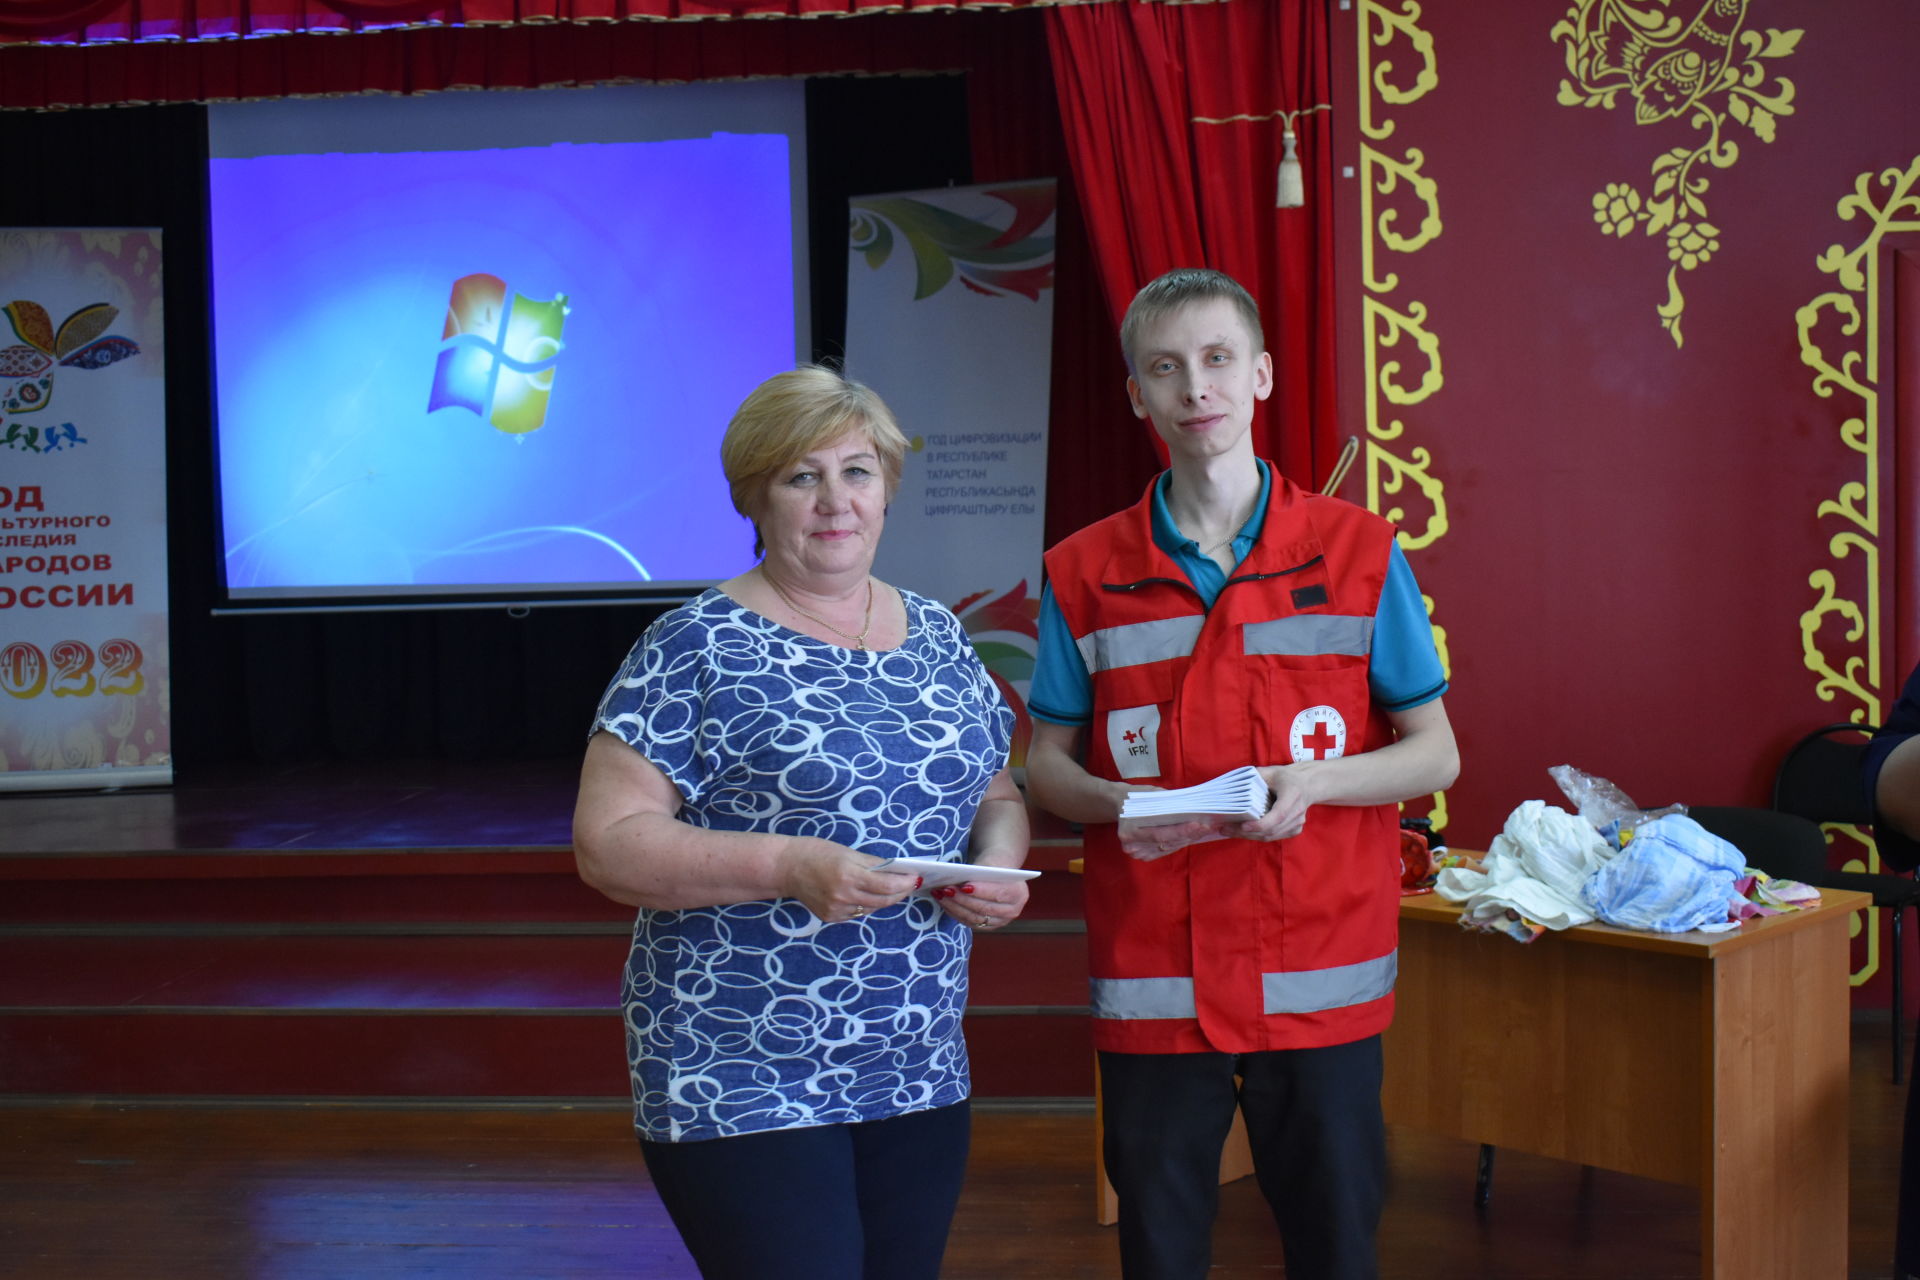 Спассцы прошли обучение по программе Российского красного Креста «Первая помощь»